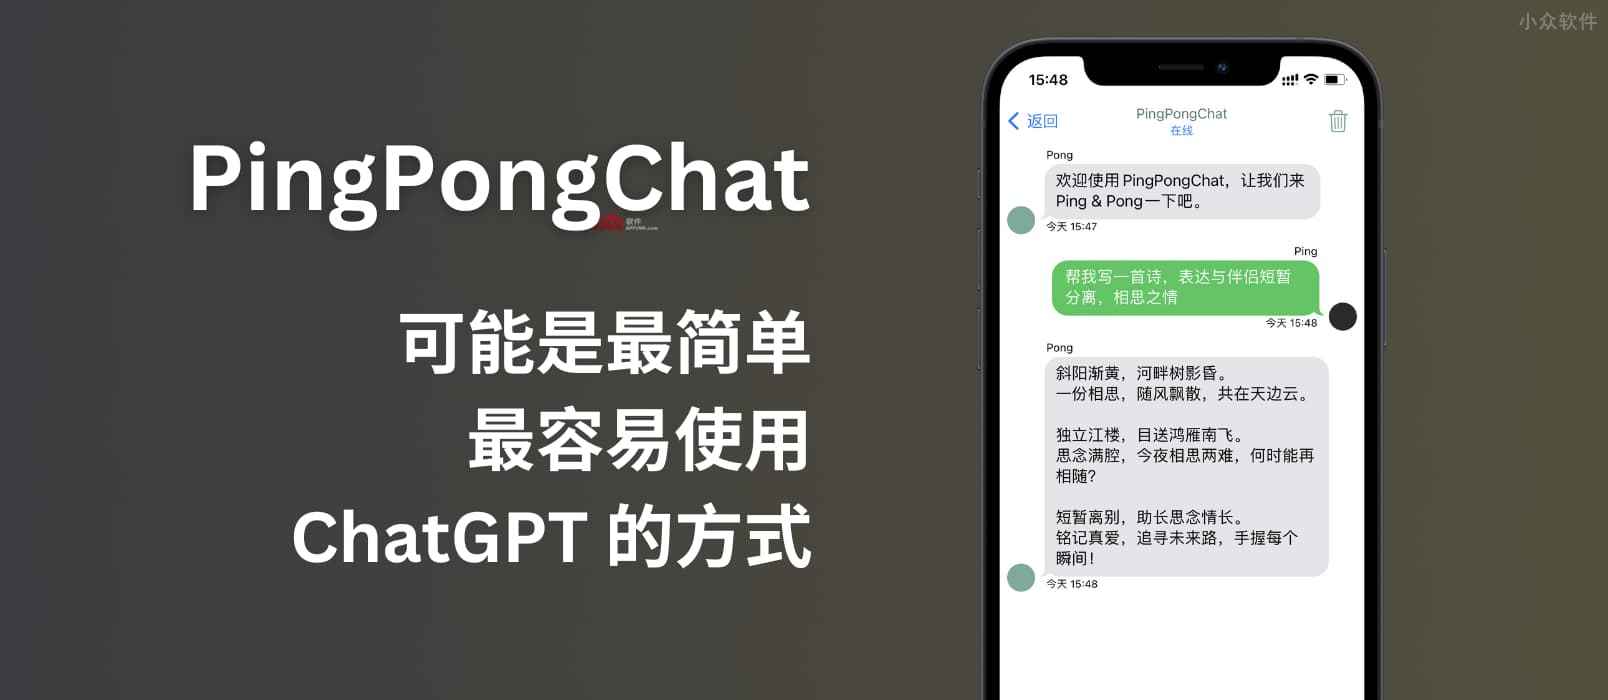 PingPongChat – 这可能是目前最简单、最容易使用 ChatGPT 的方式了[iOS/macOS]